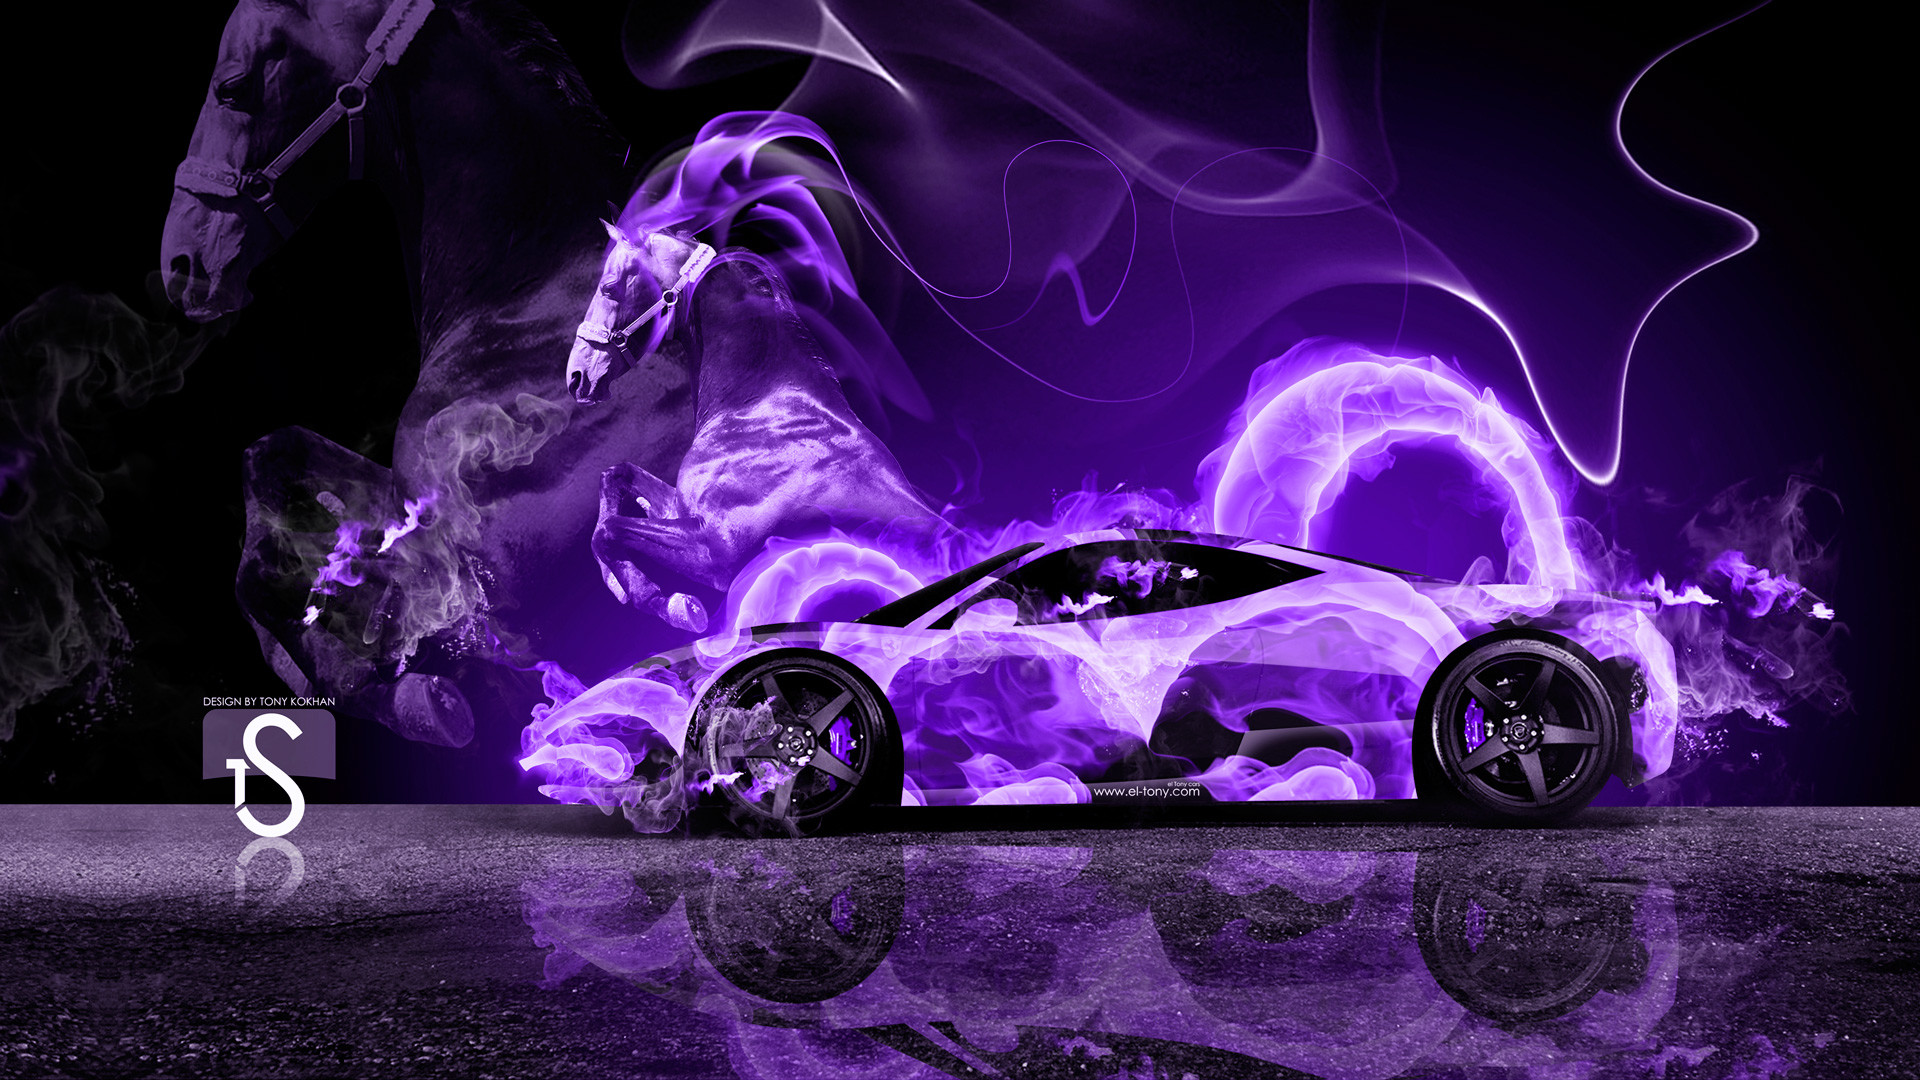 1920x1080 ... Ferrari-Violet-Fire-Horse-Car-2014-HD-Wallpapers-